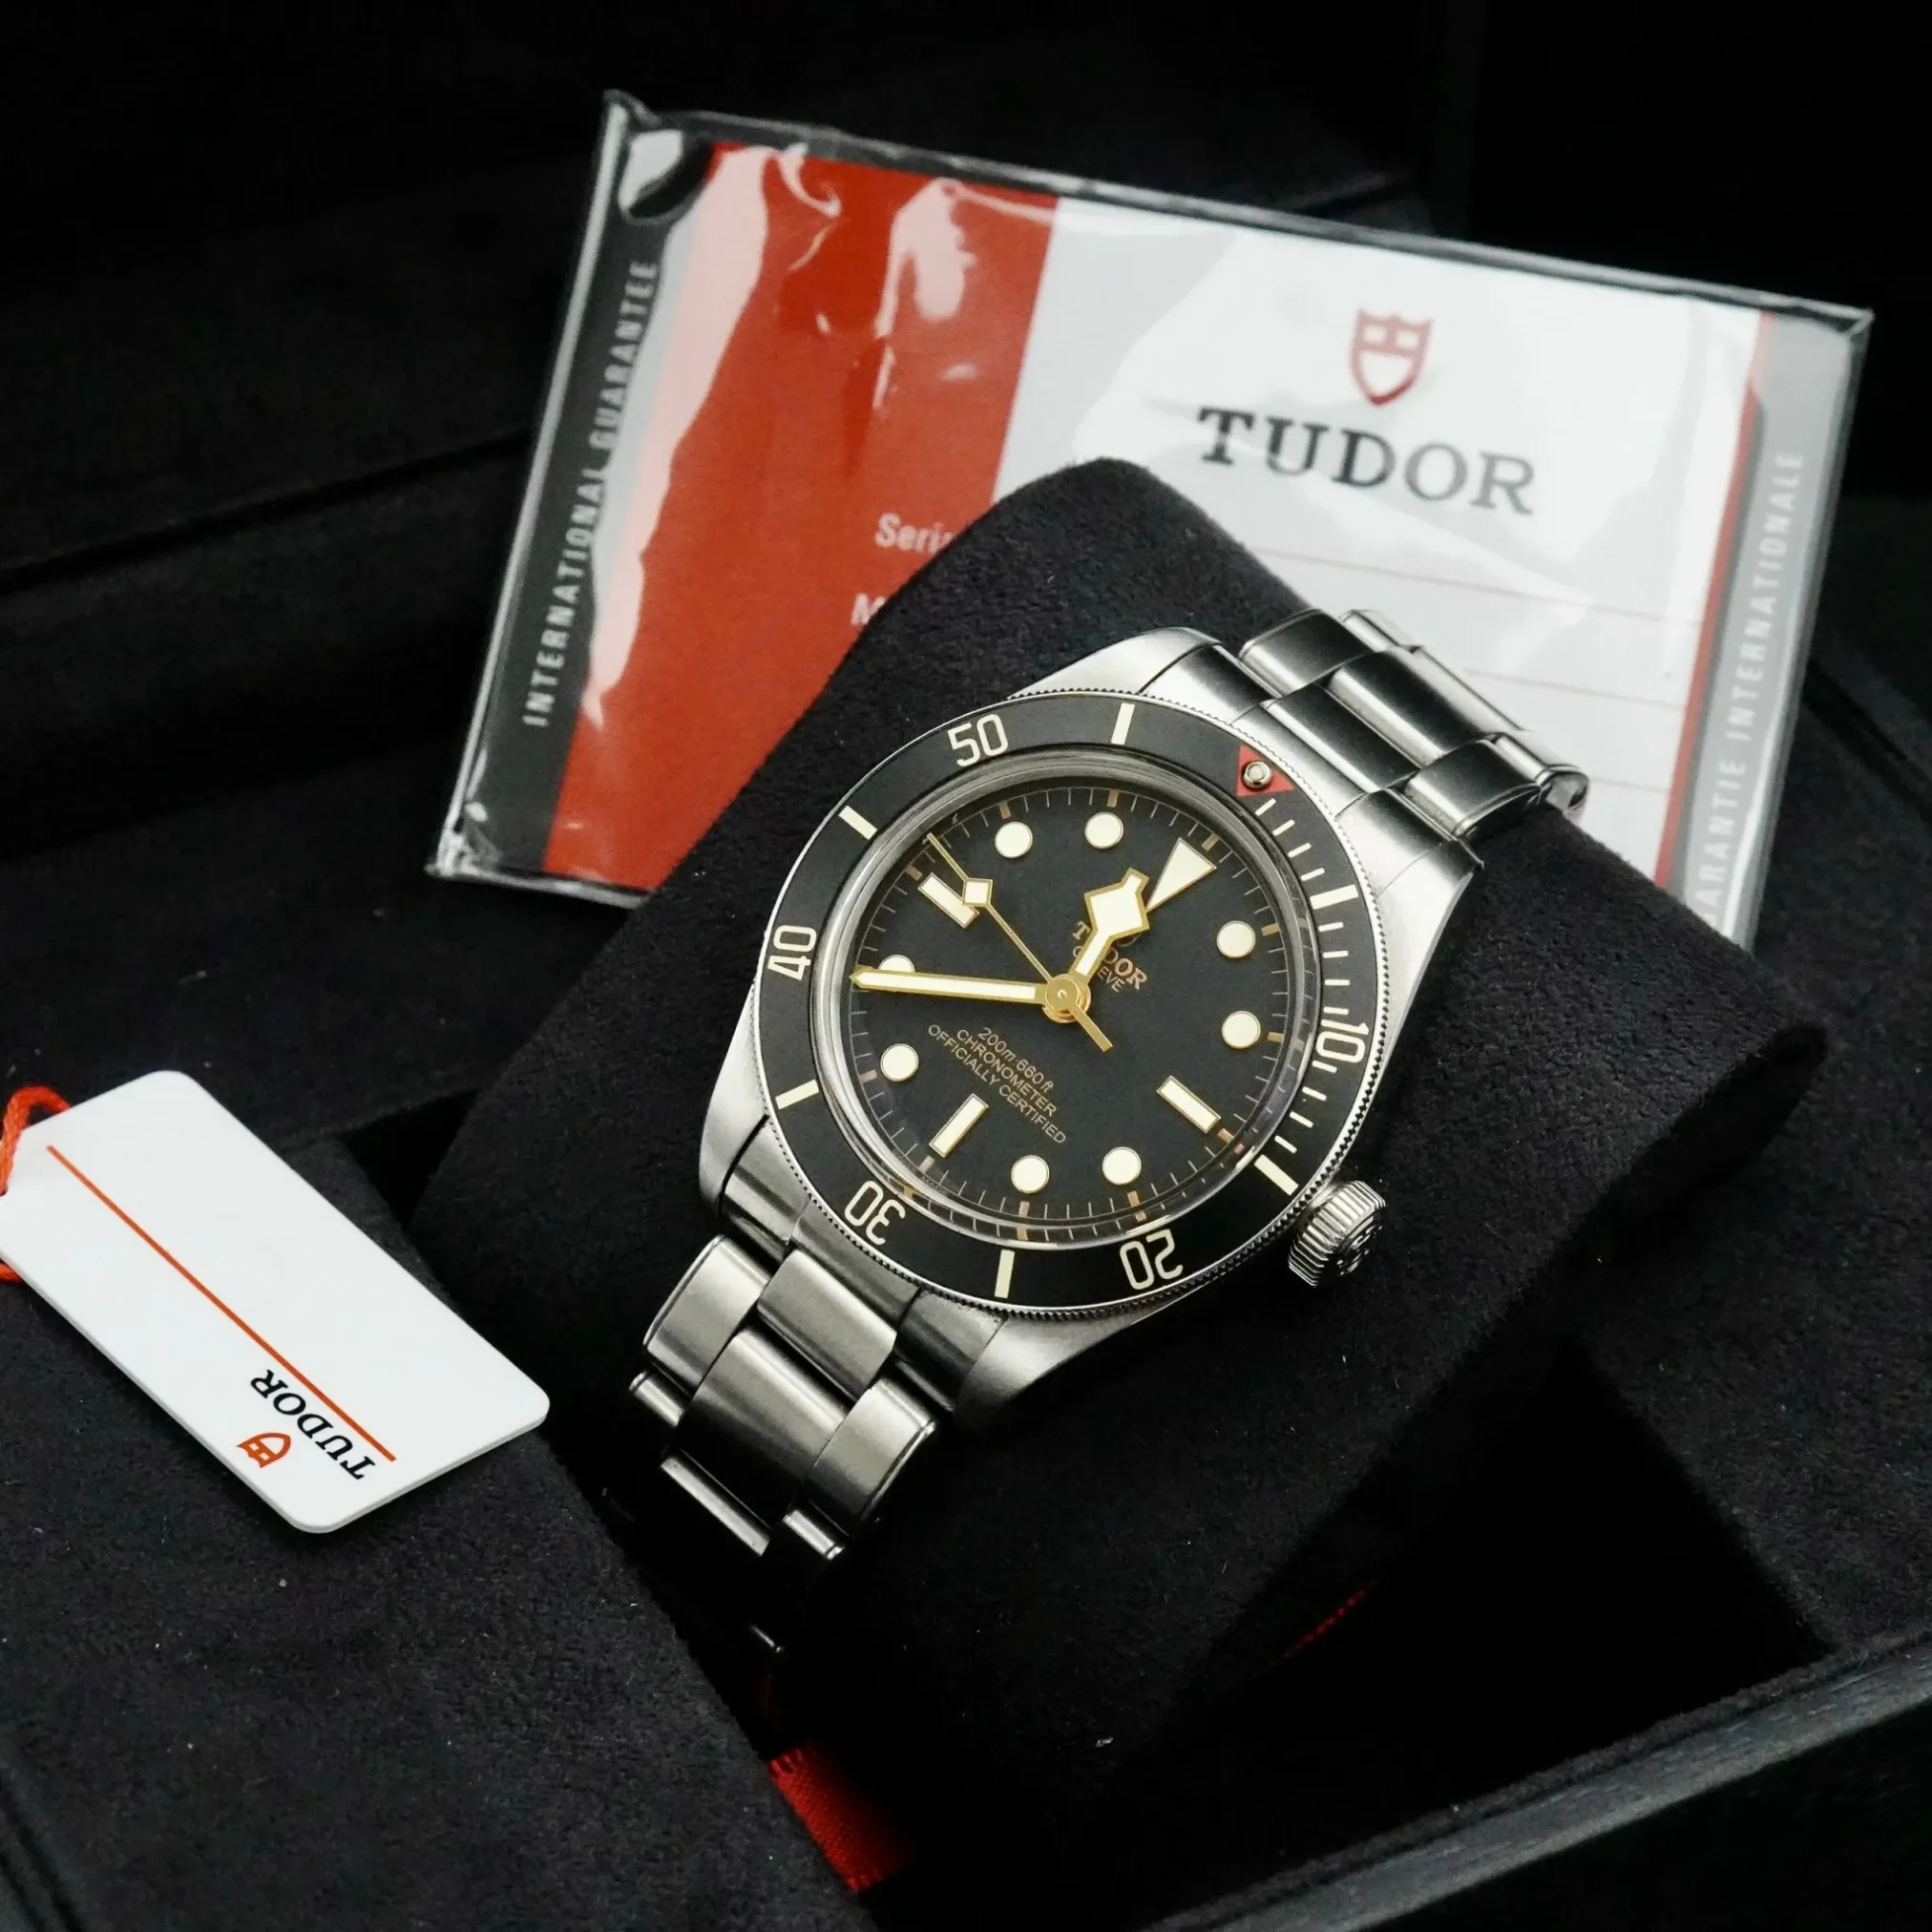 Đồng Hồ Tudor Black Bay 58 Chronometer M79030N-0001 mặt số màu đen. Dây đeo bằng thép. Thân vỏ bằng thép.